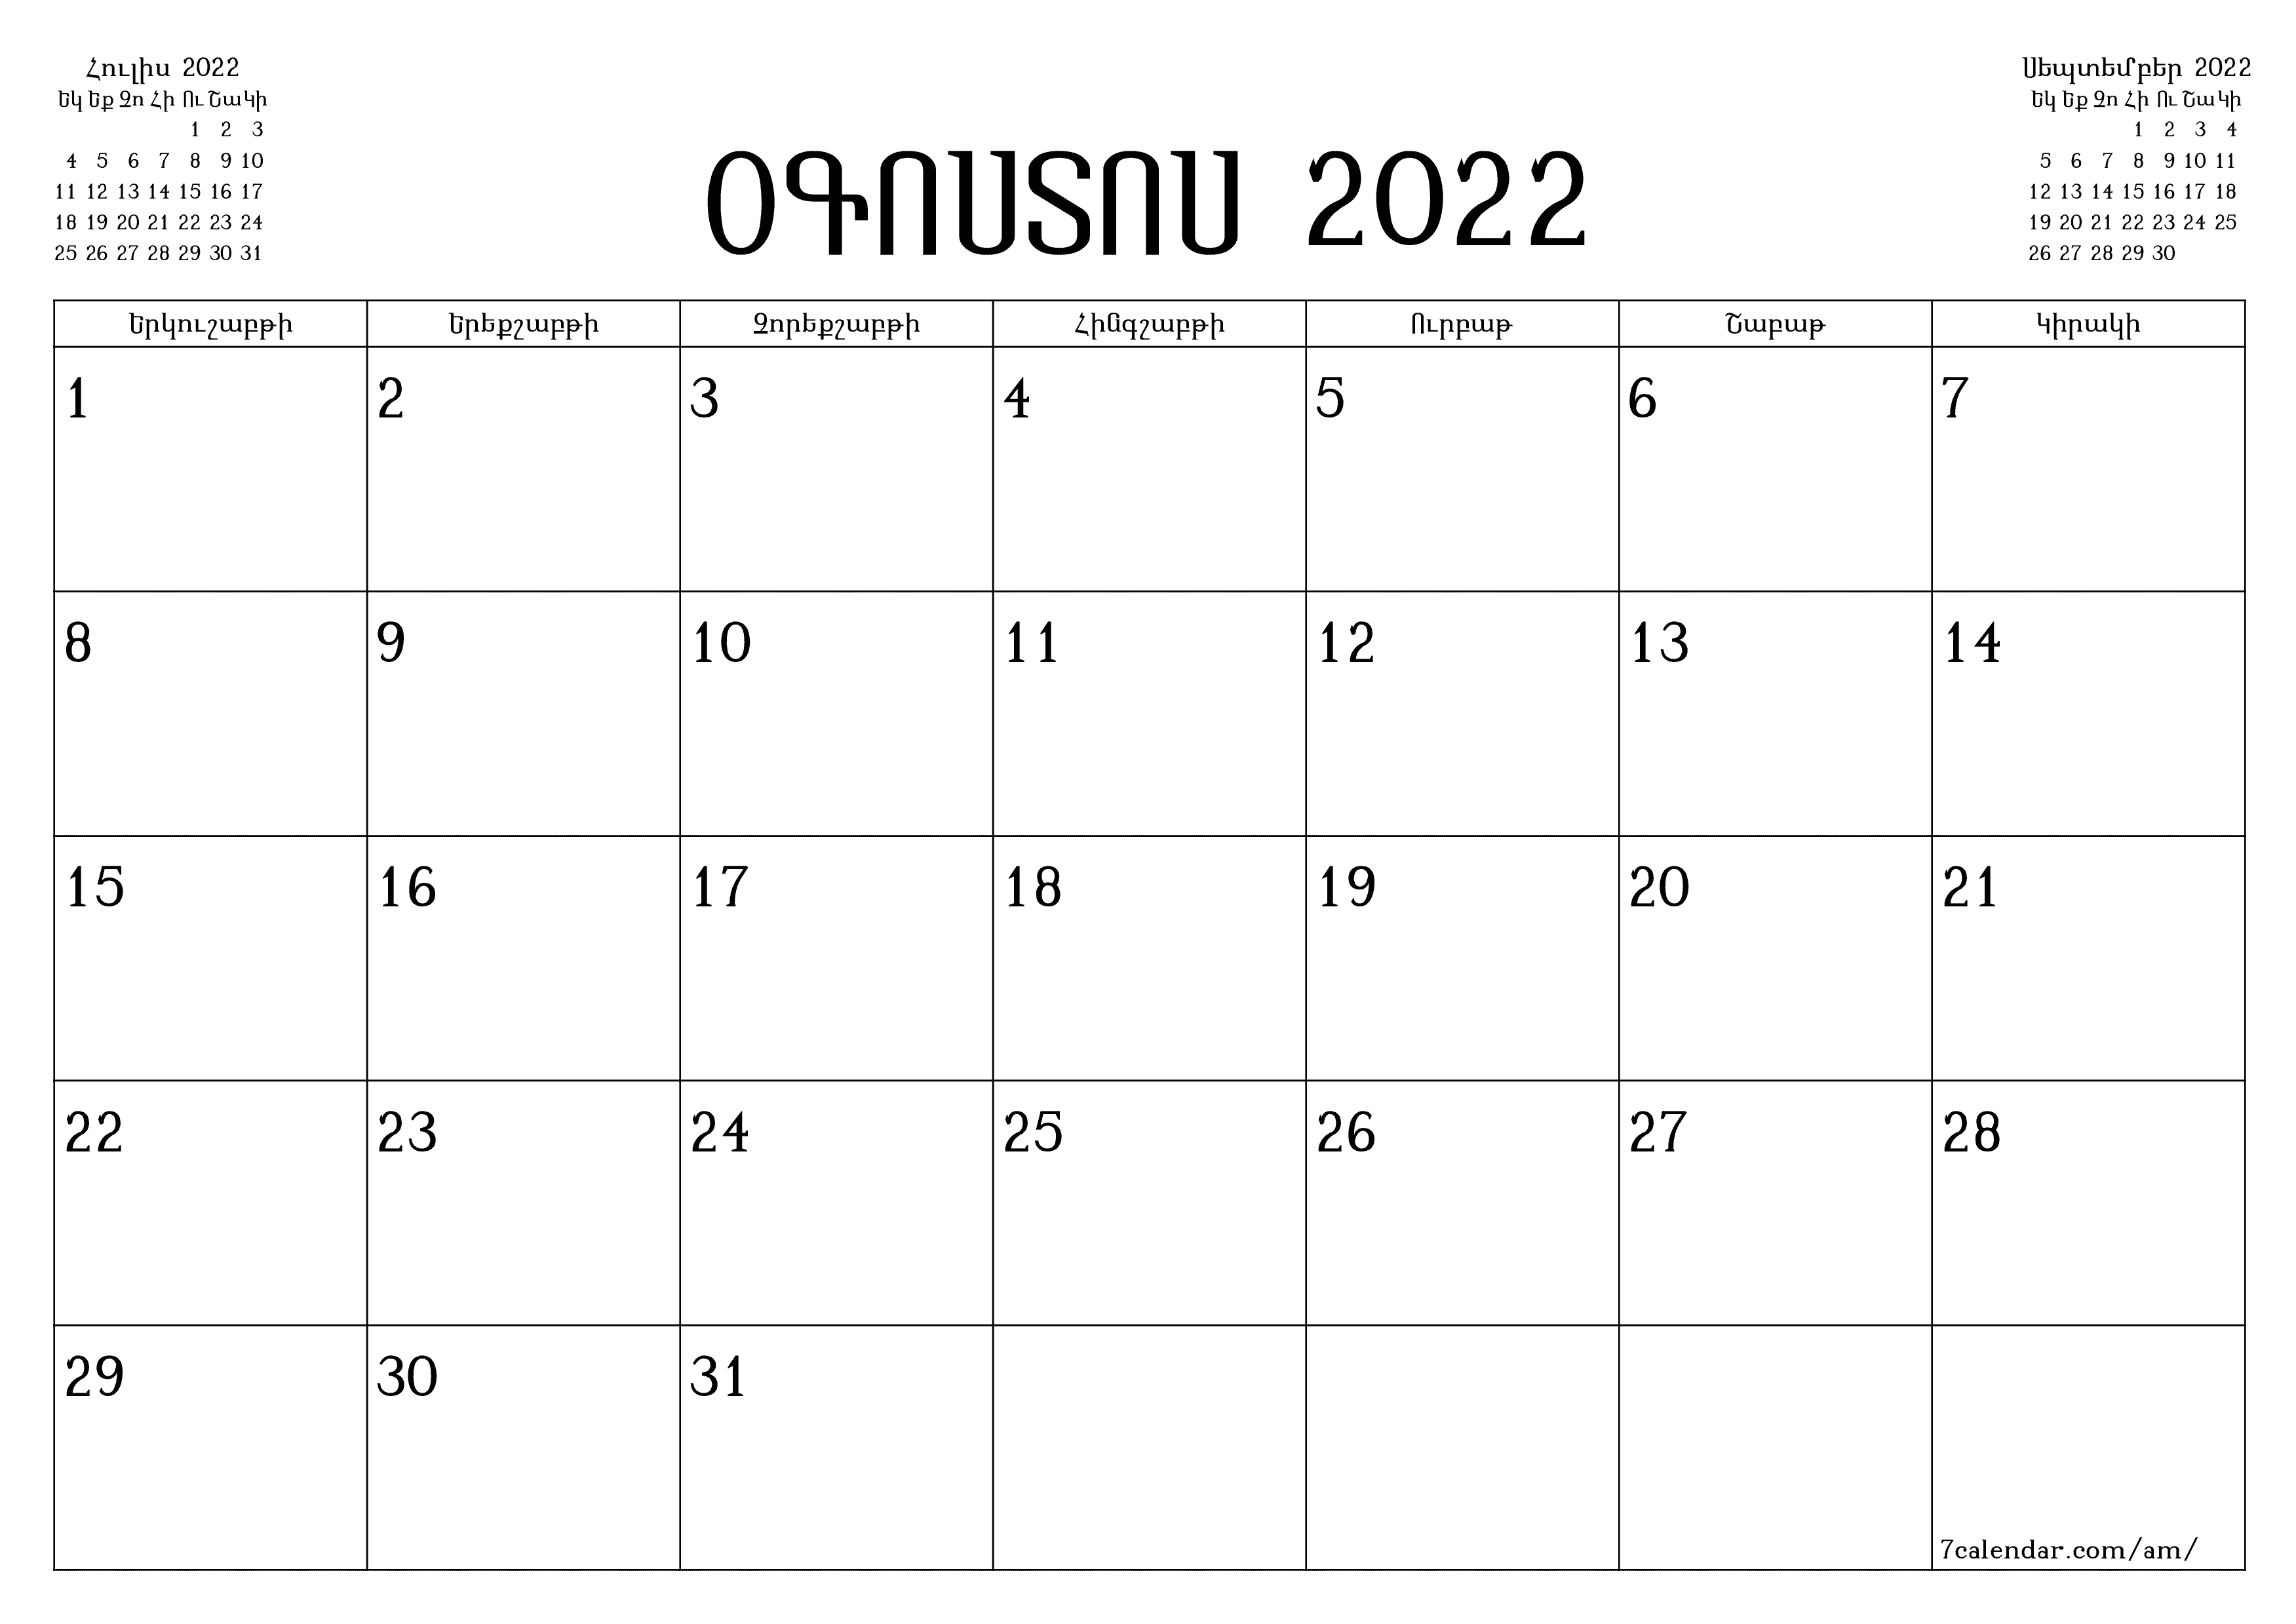 տպագրվող պատի ի ձևանմուշ անվճար հորիզոնական Ամսական պլանավորող օրացույց Օգոստոս (Օգս) 2022